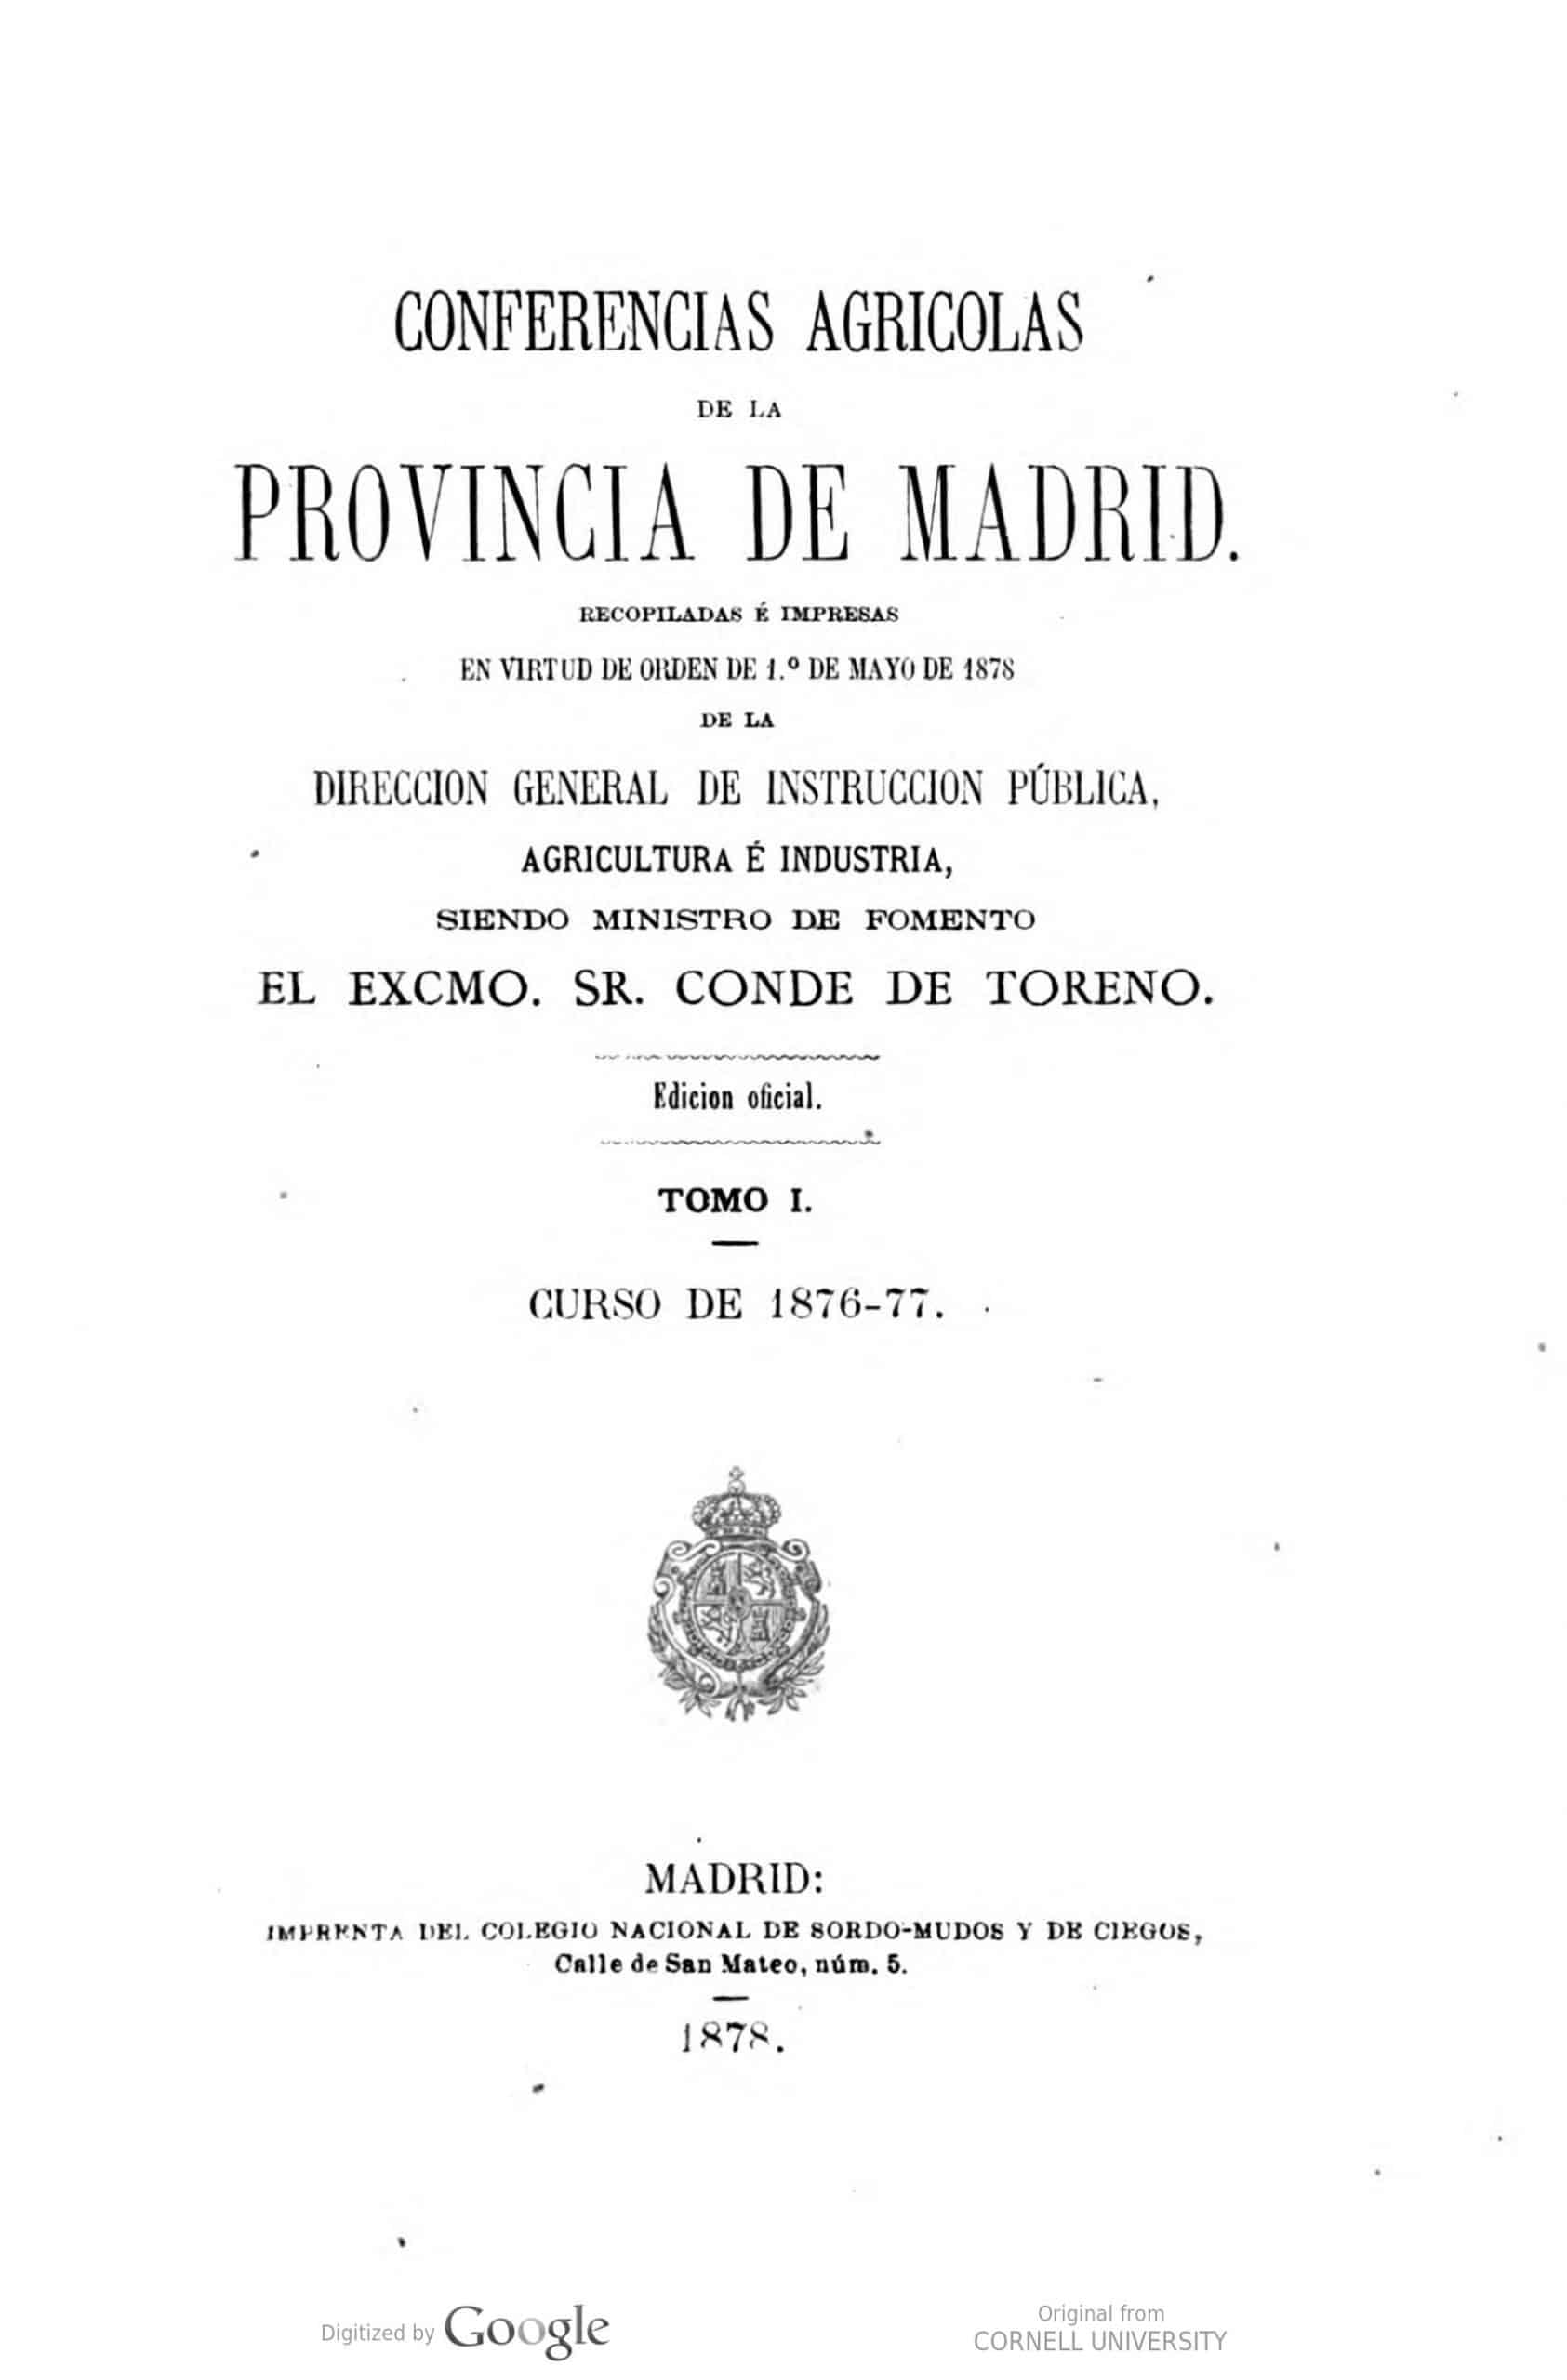 Conferencias agricolas de la provincia de Madrid Recopiladas é impresas en virtud de orden de l.o Mayo de 1878 de la Direccion general